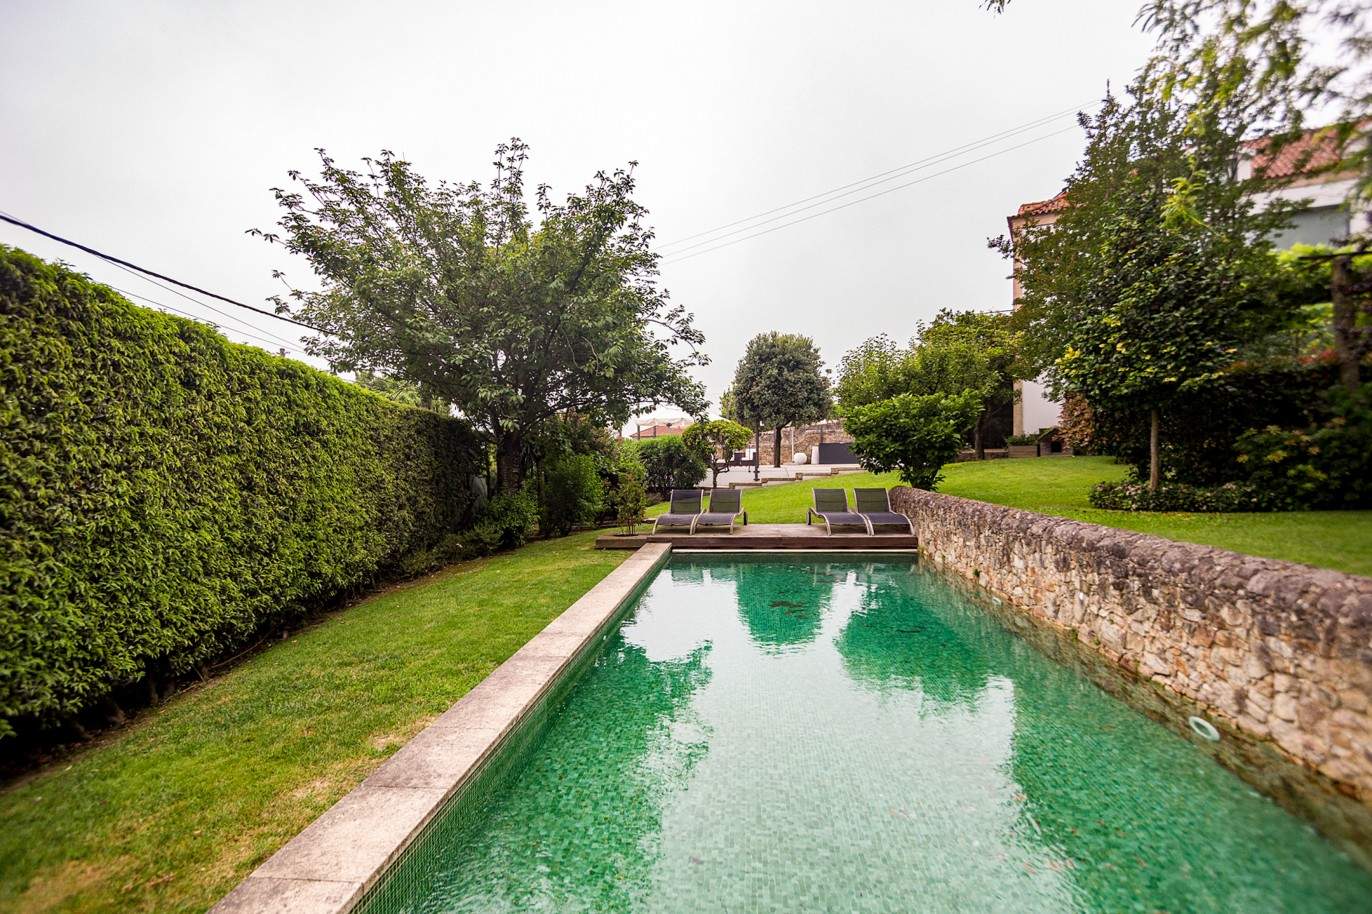 Moradia com piscina e jardim, para venda, em Vila do Conde_201359